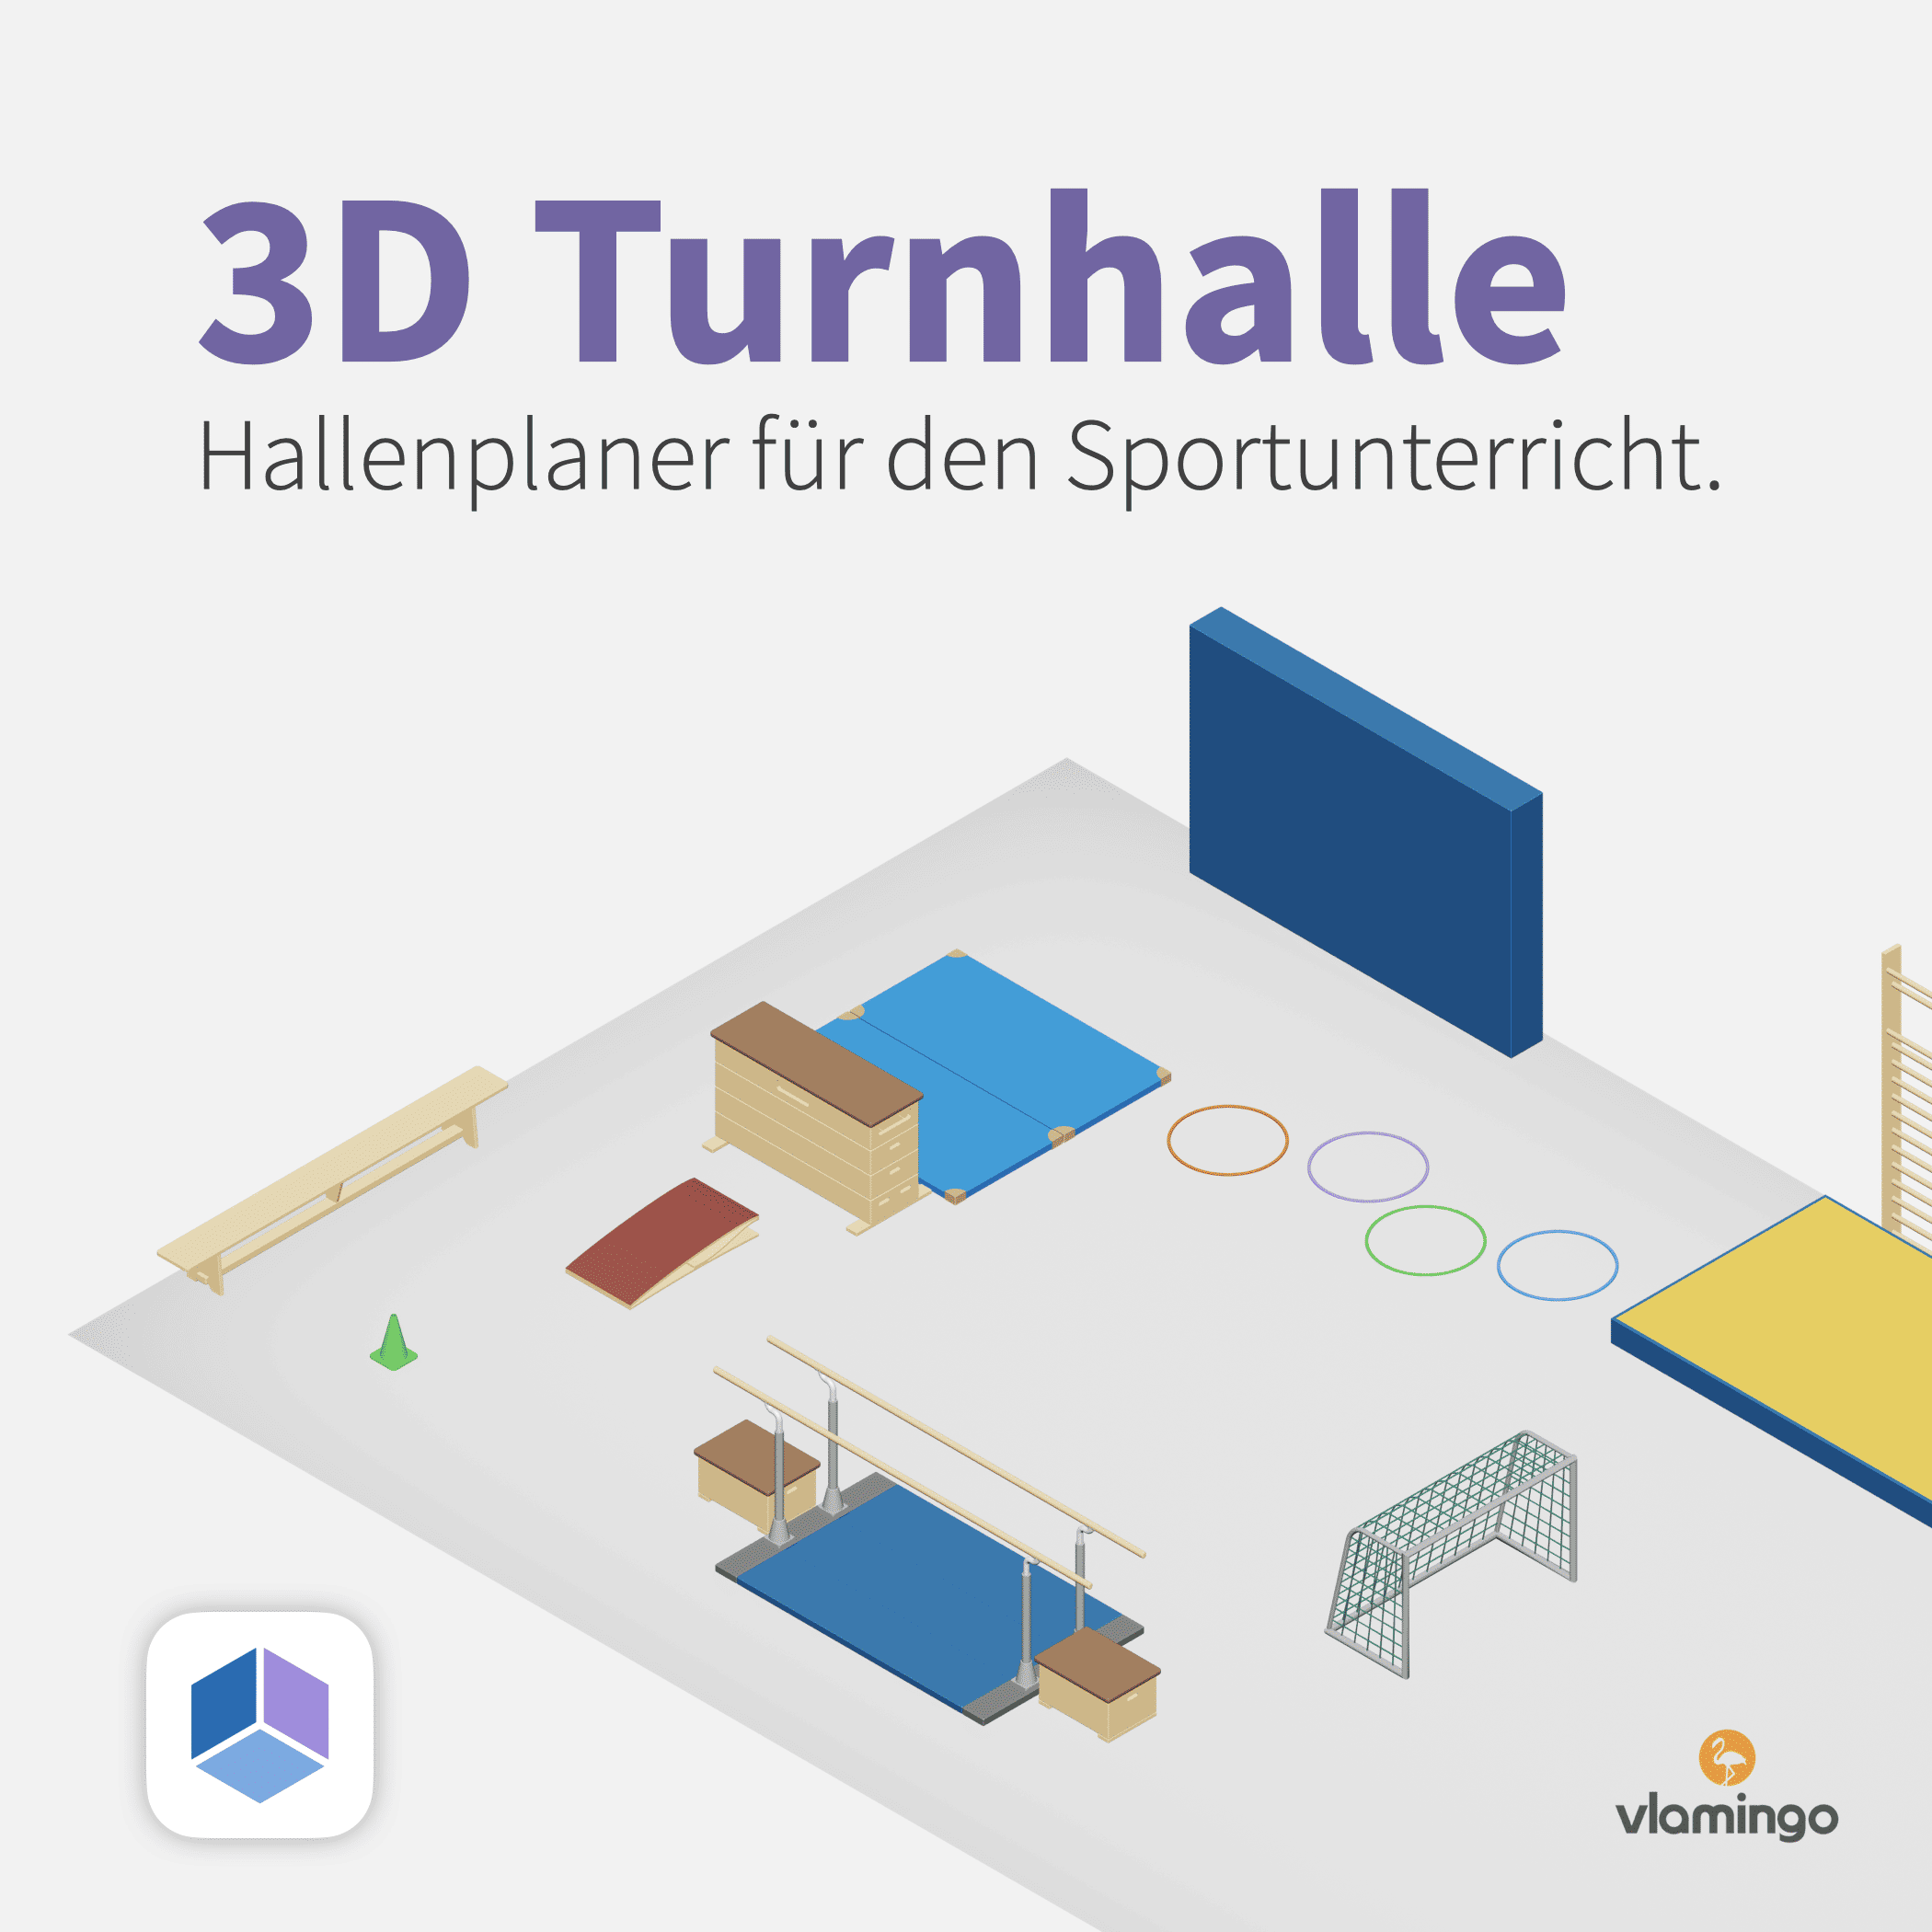 3D Turnhalle - Hallenplaner - Geräteaufbauplaner für den Sportunterricht - Stationskarten und Hallenpläne erstellen